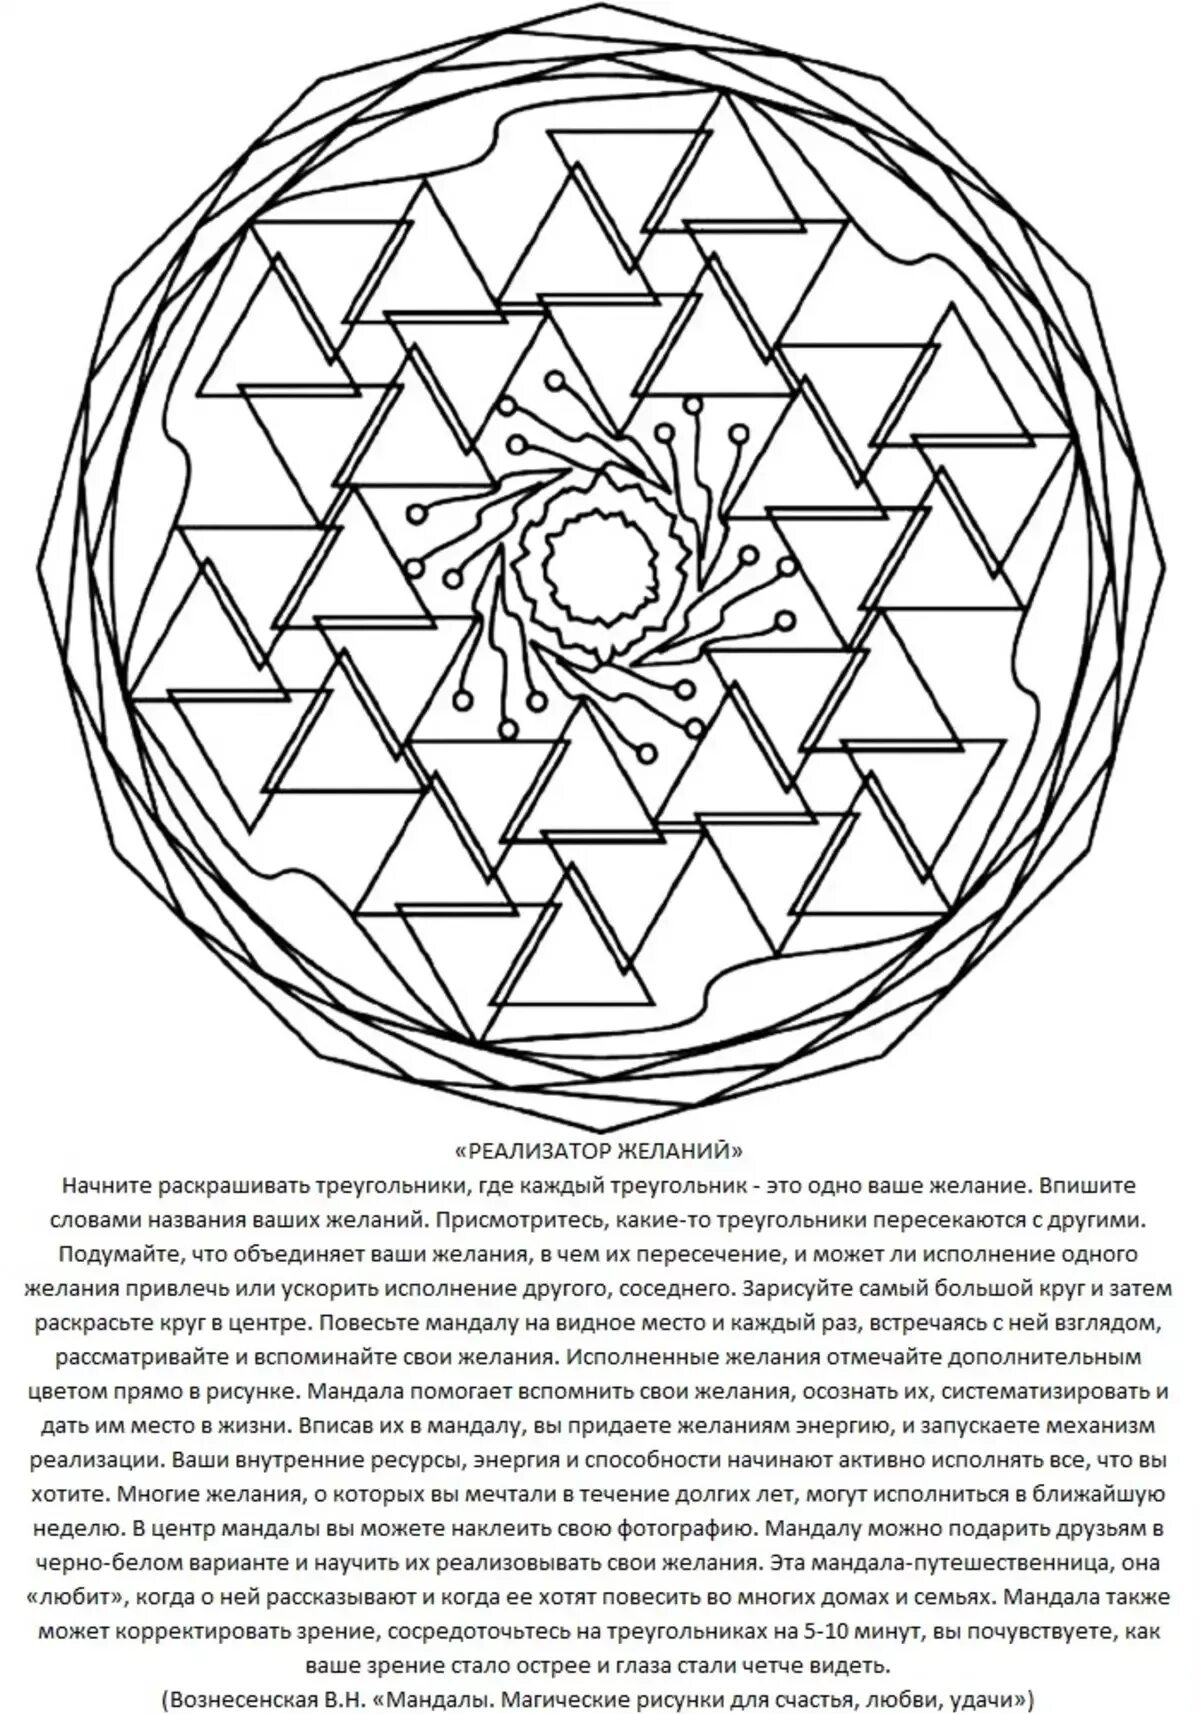 Mandala of desires fulfillment of desires #8